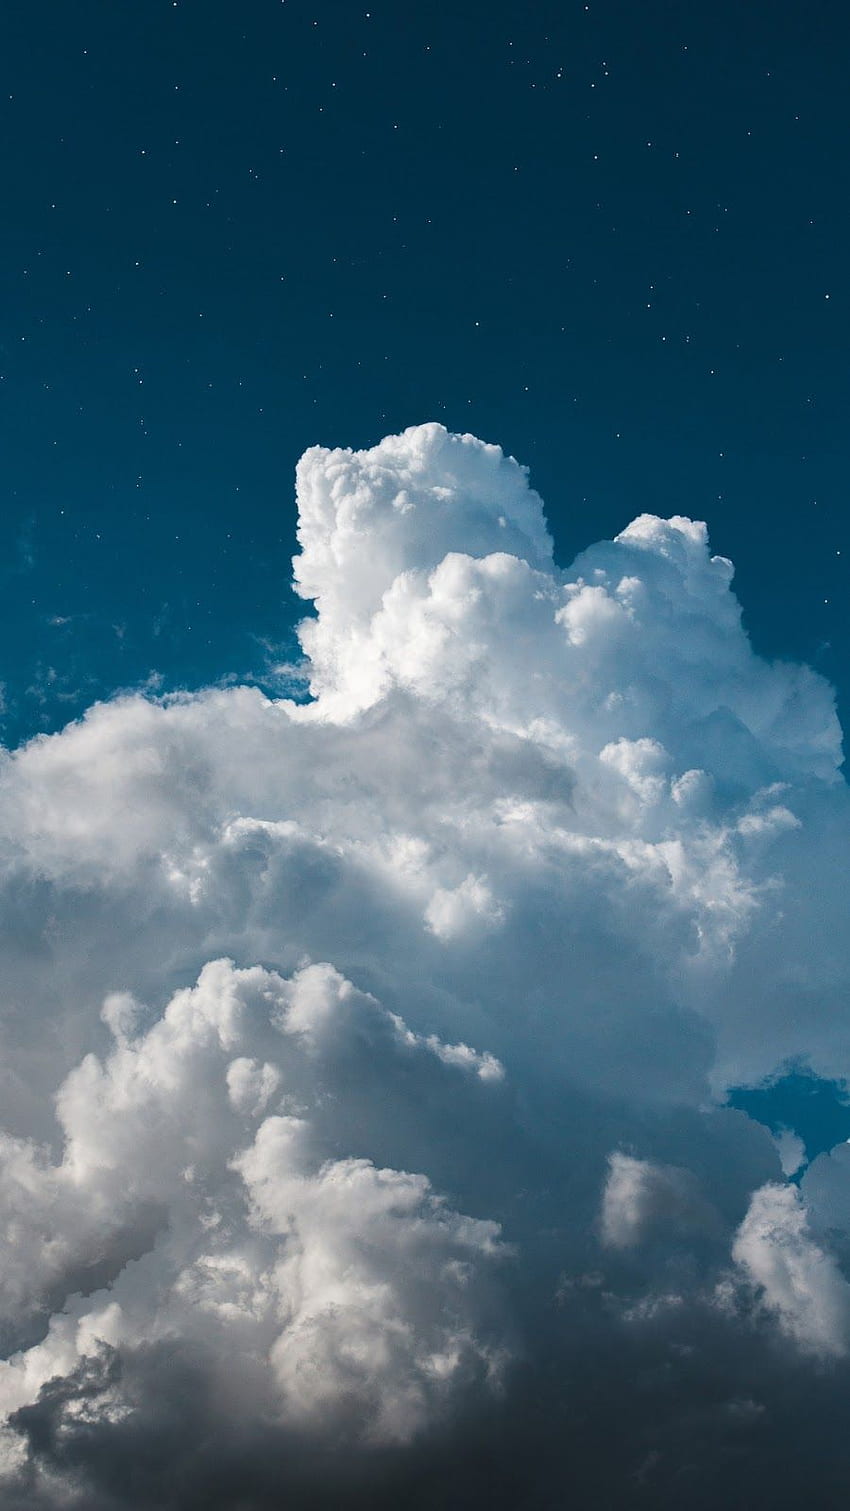 Mây v fluffy trắng xóa như những bông bông tuyết giữa trời xanh rực rỡ. Hình ảnh này khiến cho lòng bạn cảm thấy thư thái, nhẹ nhàng và đong đầy tình yêu với thiên nhiên. Hãy thưởng thức hình ảnh để cảm nhận sự tuyệt vời của mây fluffy.